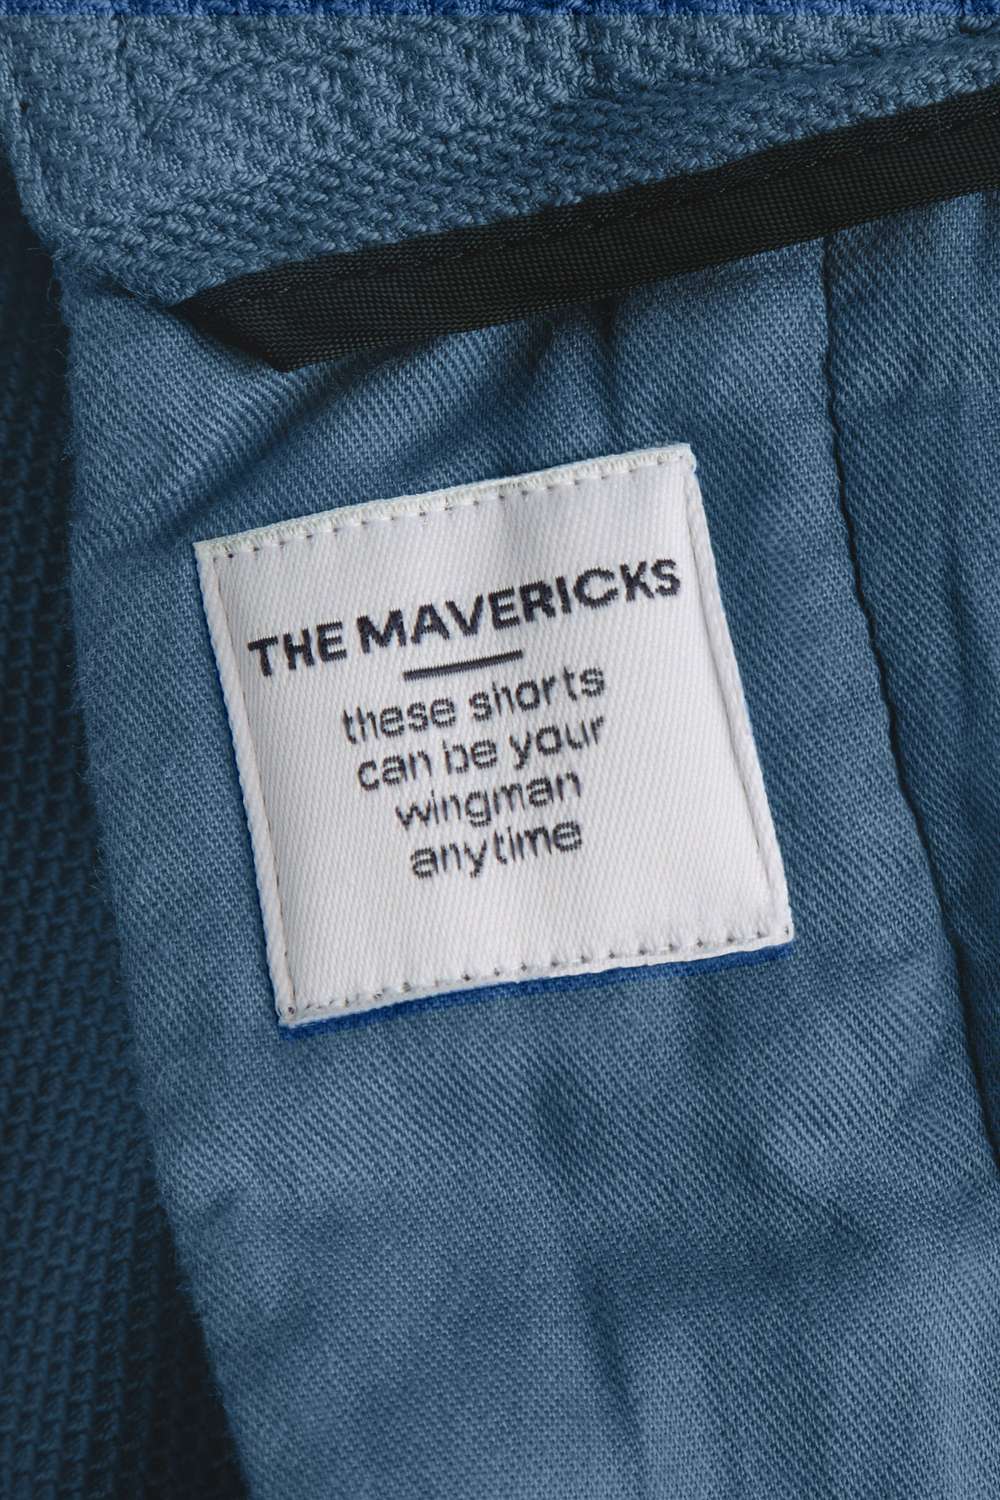 Mavericks * The Piqués